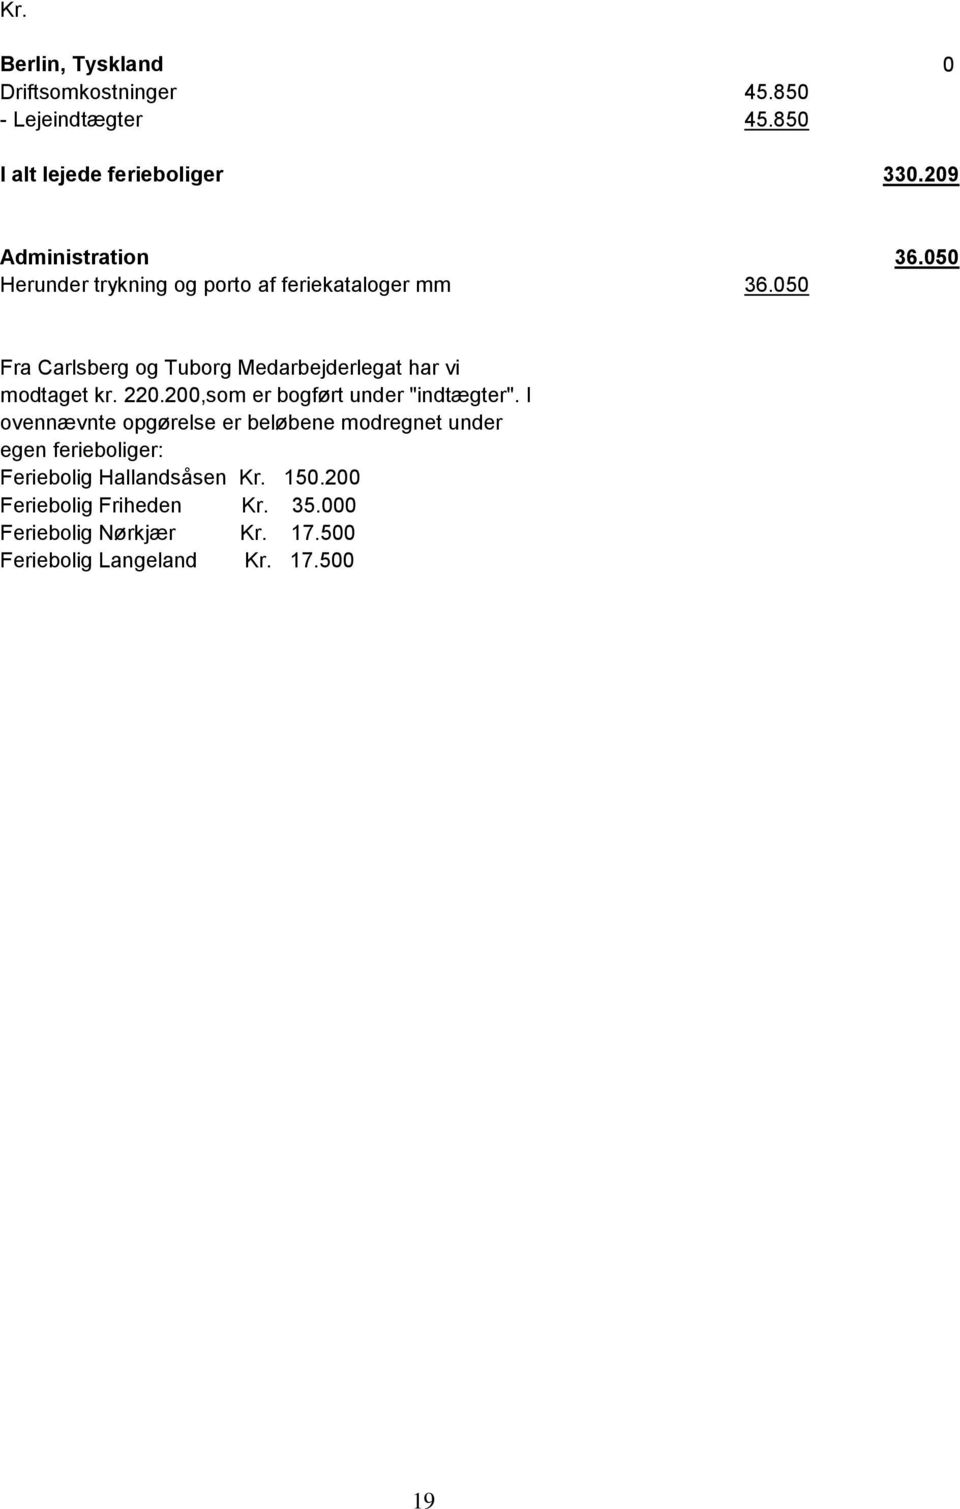 050 Fra Carlsberg og Tuborg Medarbejderlegat har vi modtaget kr. 220.200,som er bogført under "indtægter".